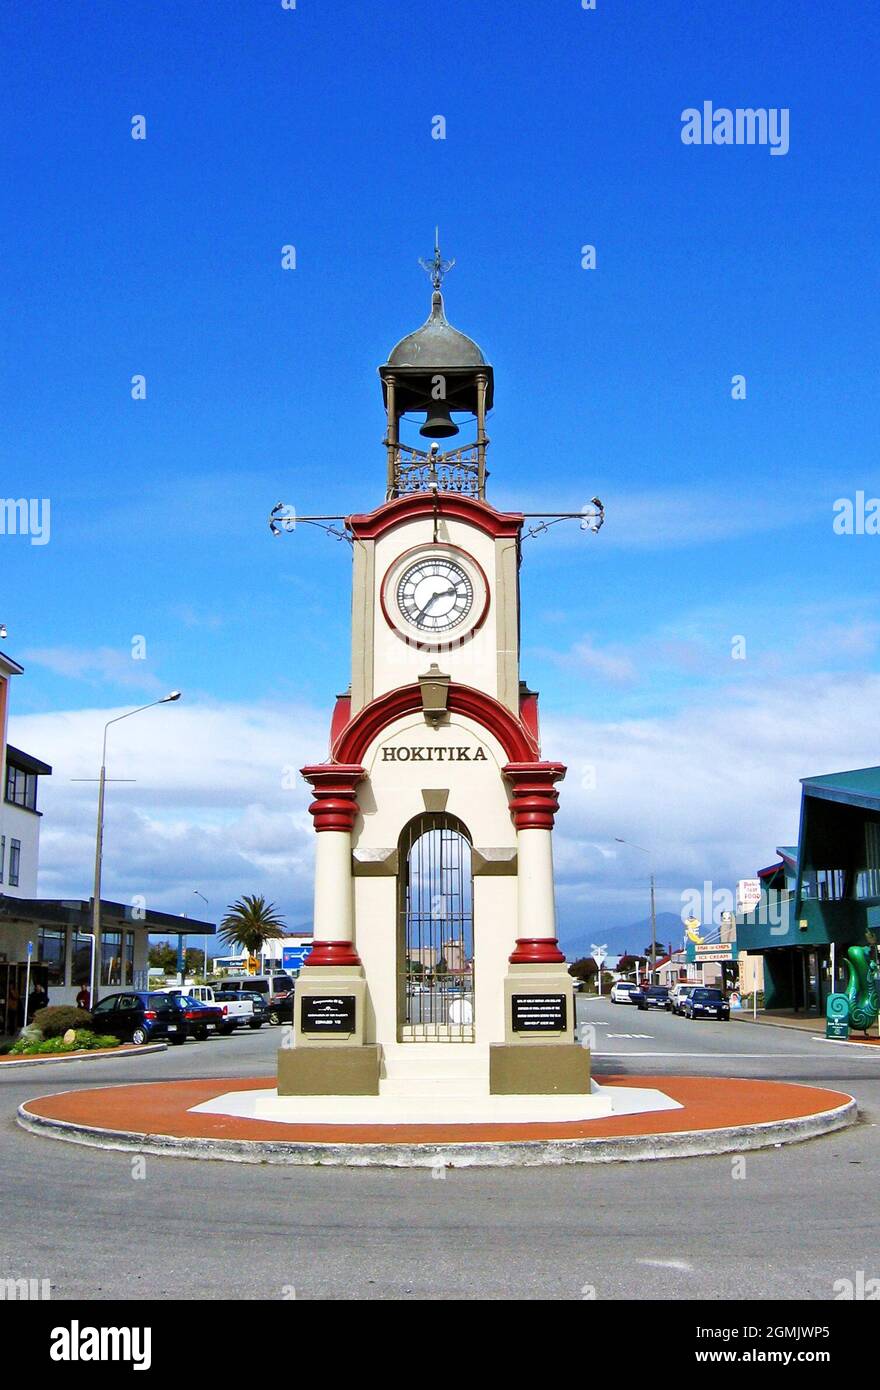 L'iconica torre dell'orologio si trova all'incrocio tra le strade di Sewell e Weld in Hokitika, Westland District, West Coast, South Island, Nuova Zelanda. La torre dell'orologio Boer War and Coronation Memorial fu svelata nel 1903. Foto Stock